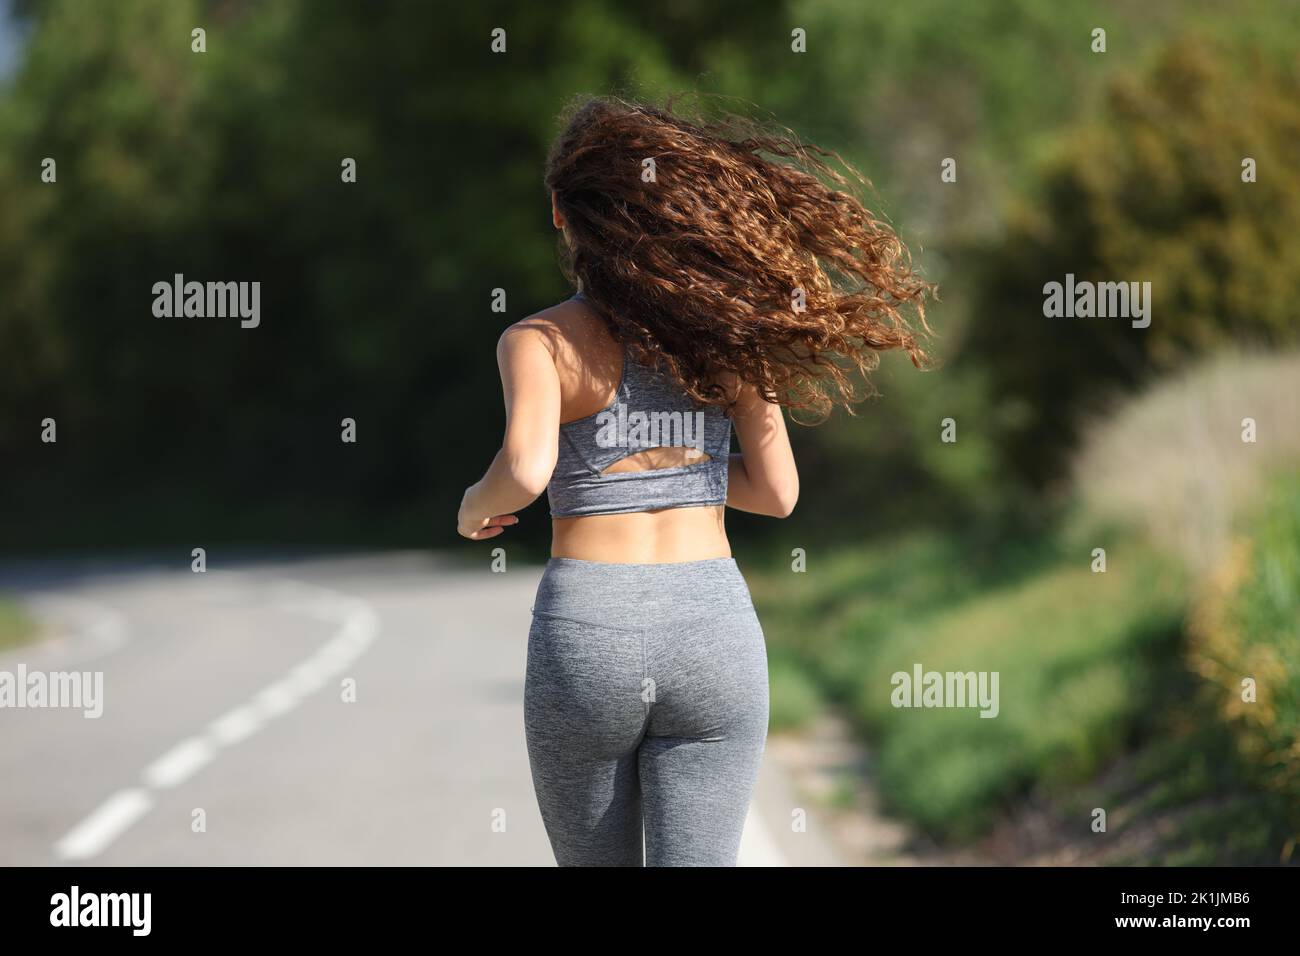 Vista posterior retrato de una mujer corriendo en una carretera Foto de stock